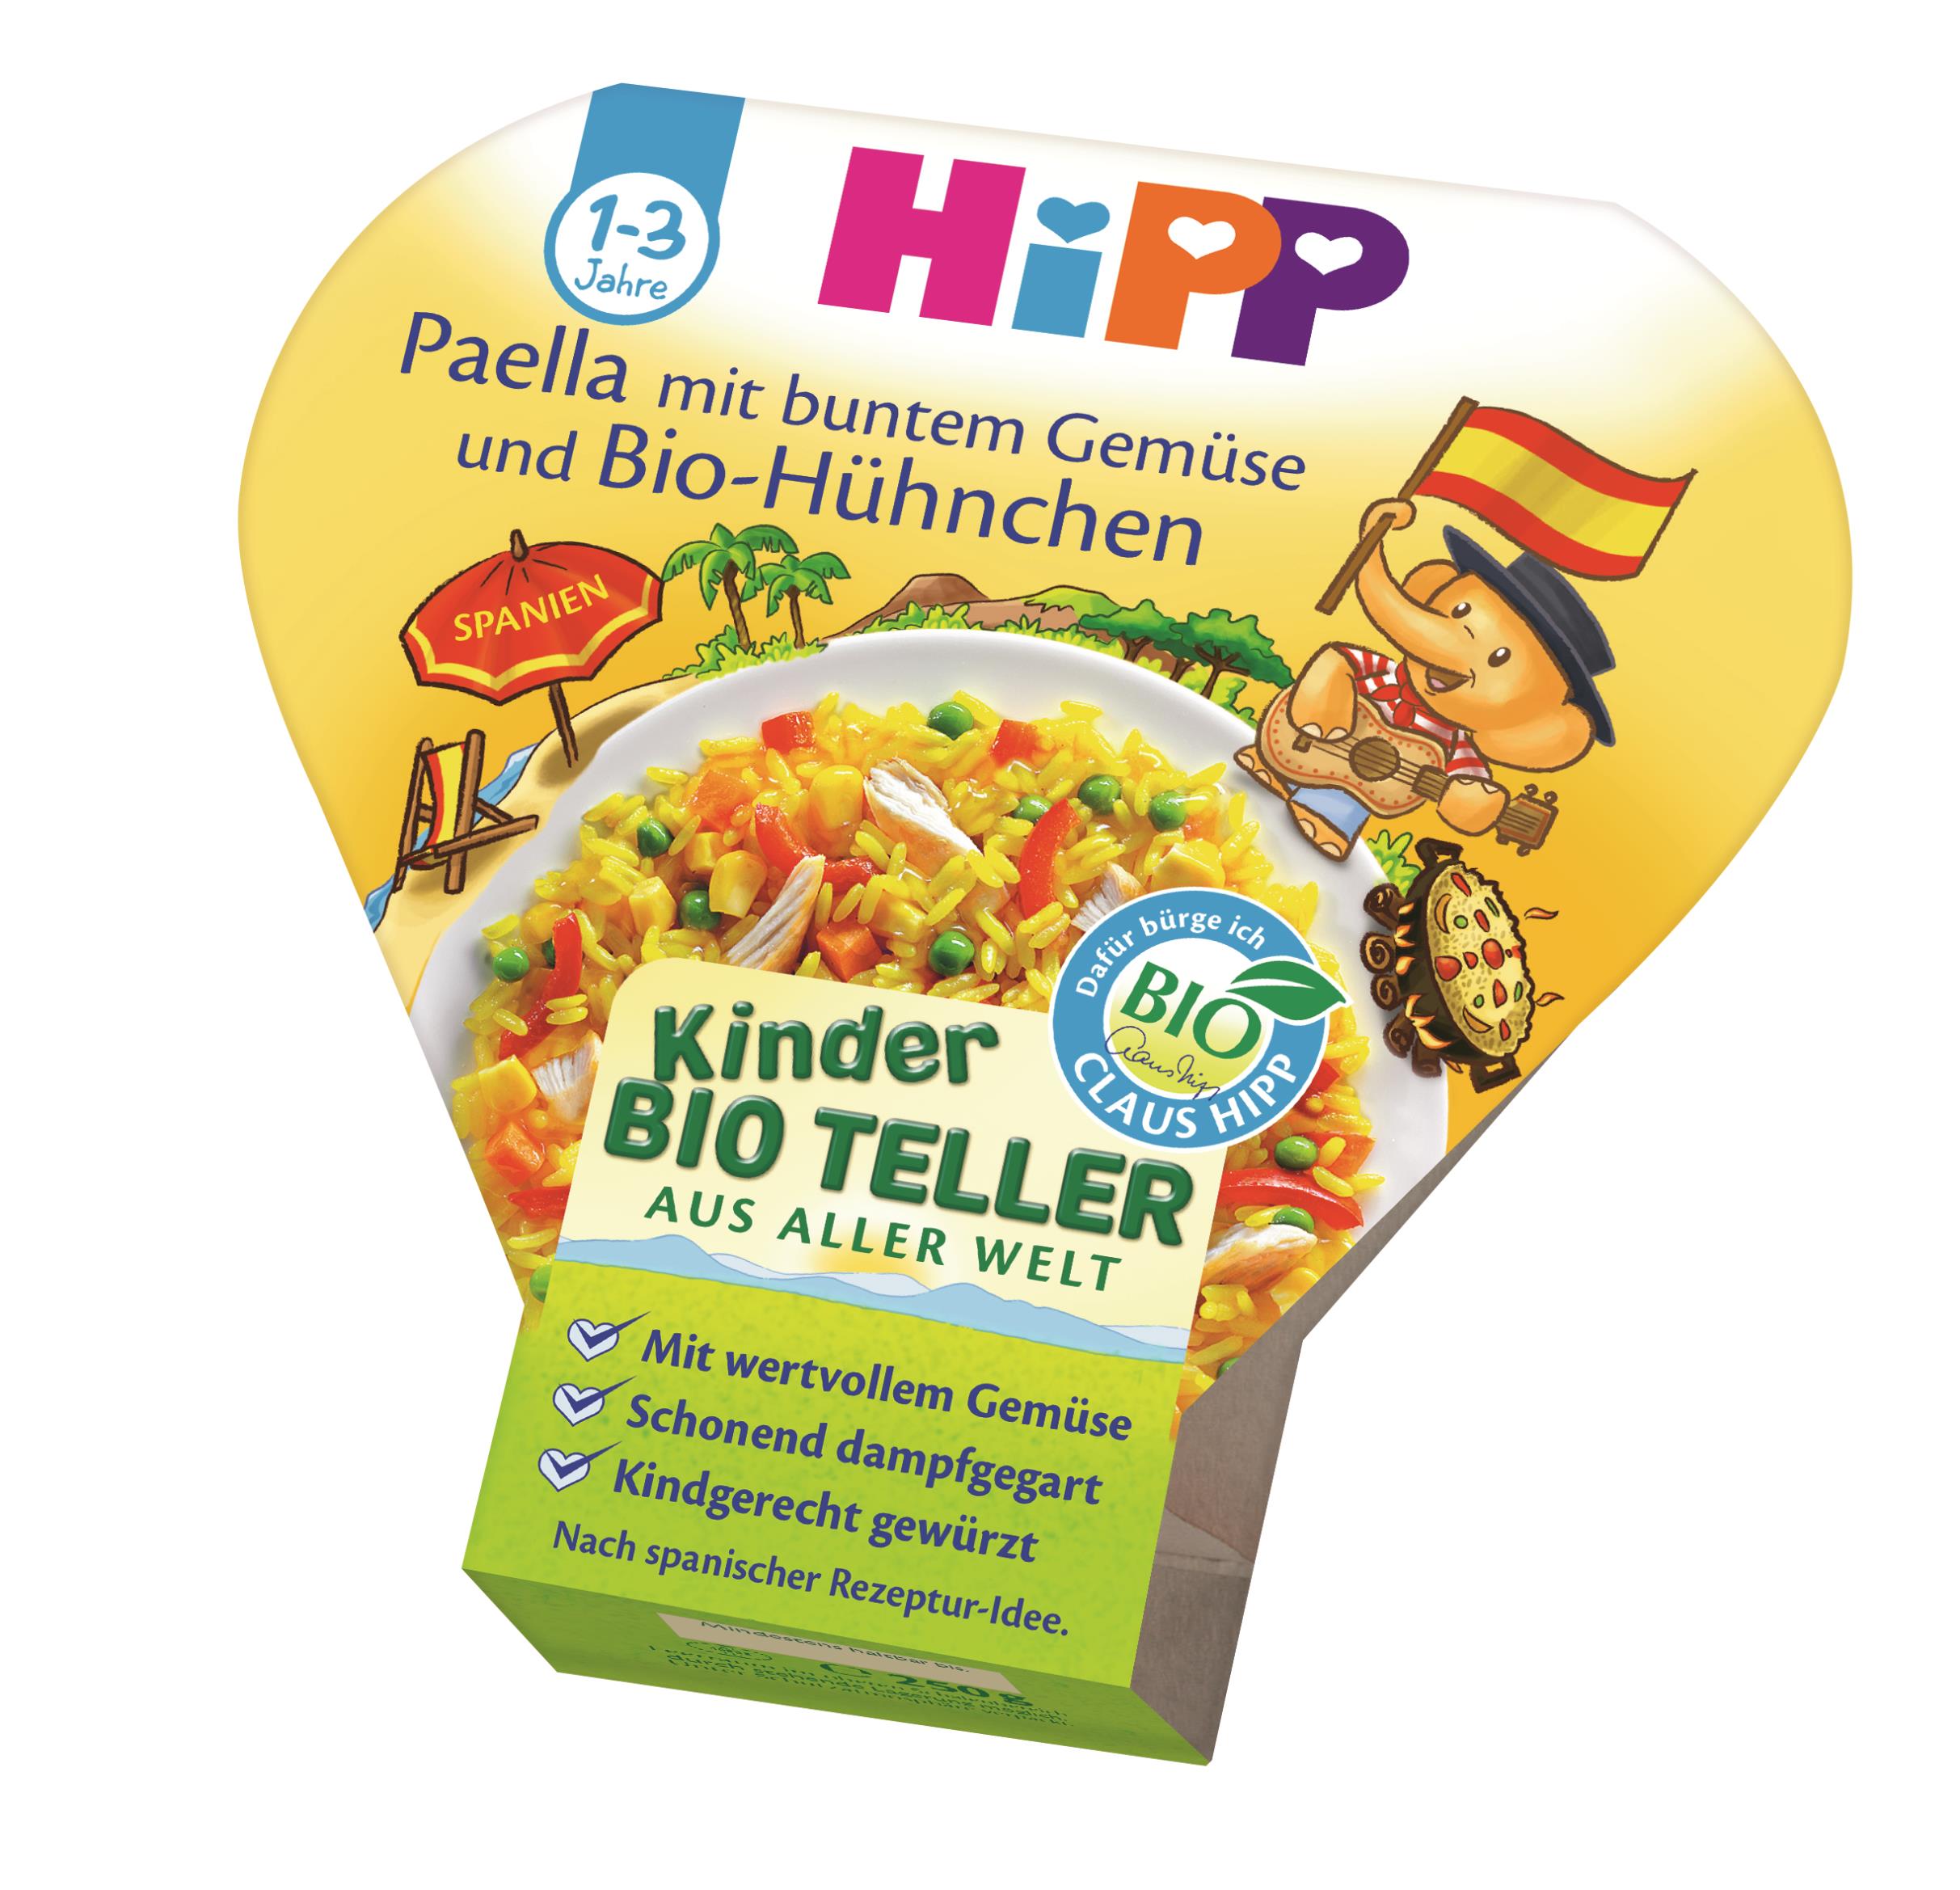 HiPP-Paella mit buntem Gemüse und BIO-Hühnchen